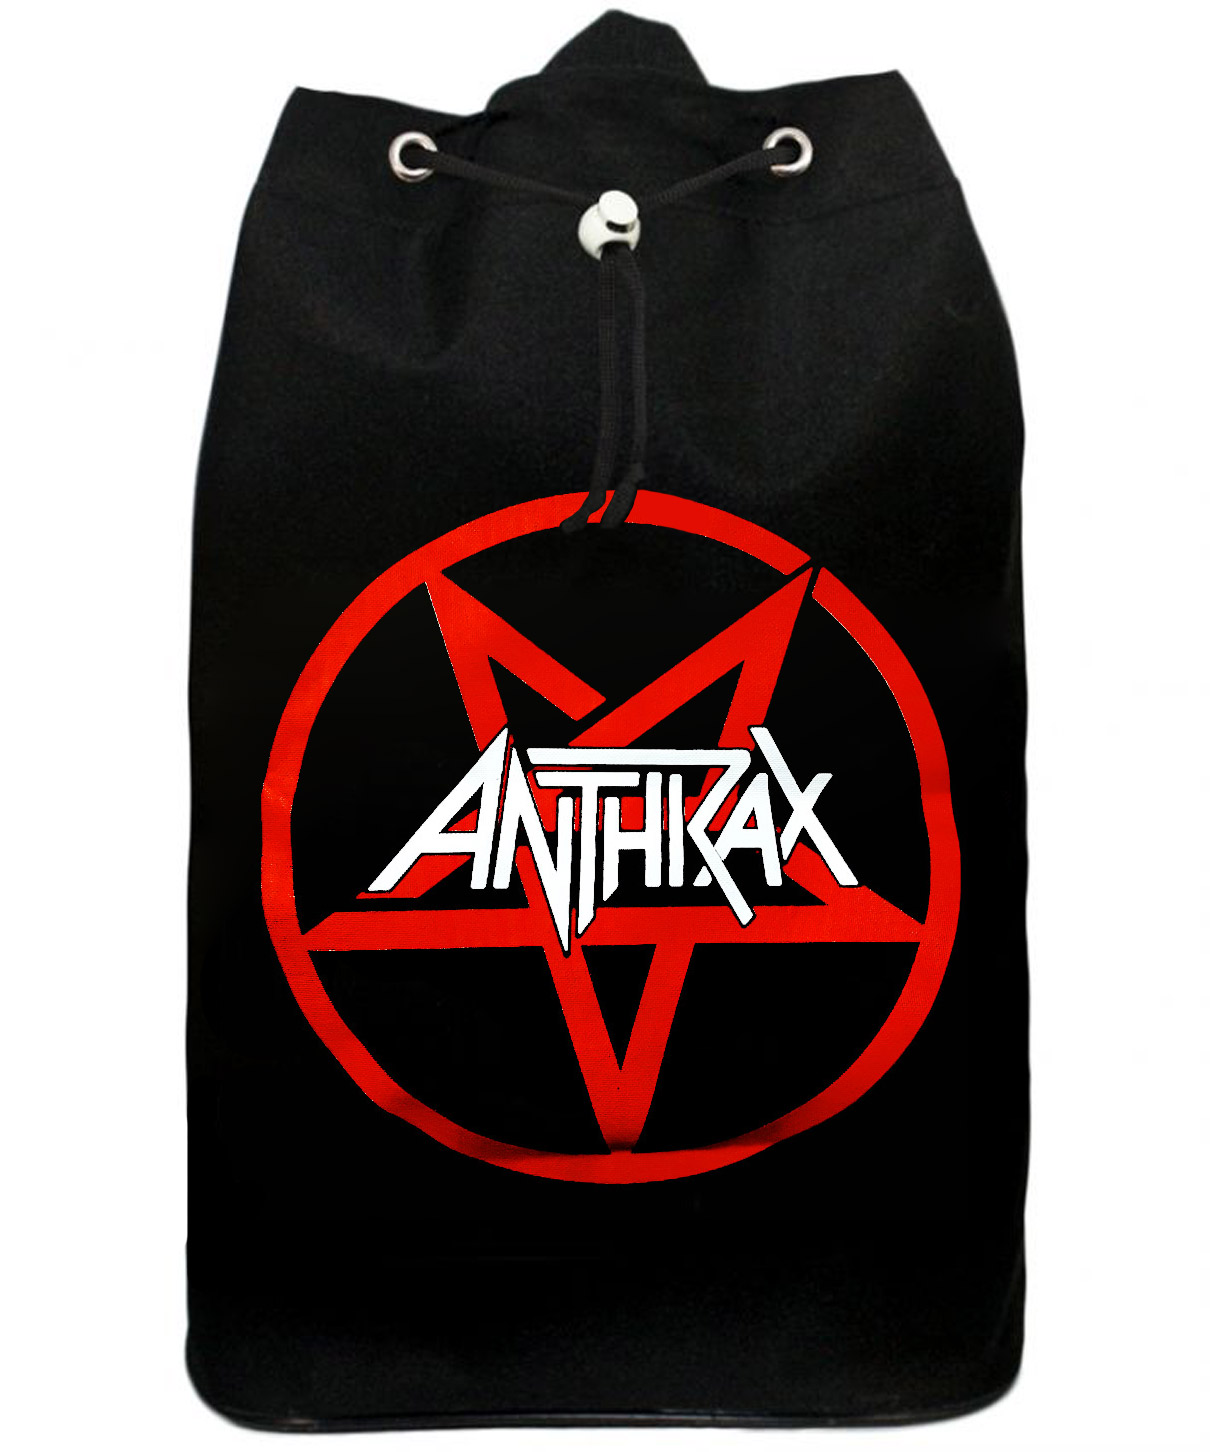 Торба Anthrax текстильная - фото 1 - rockbunker.ru